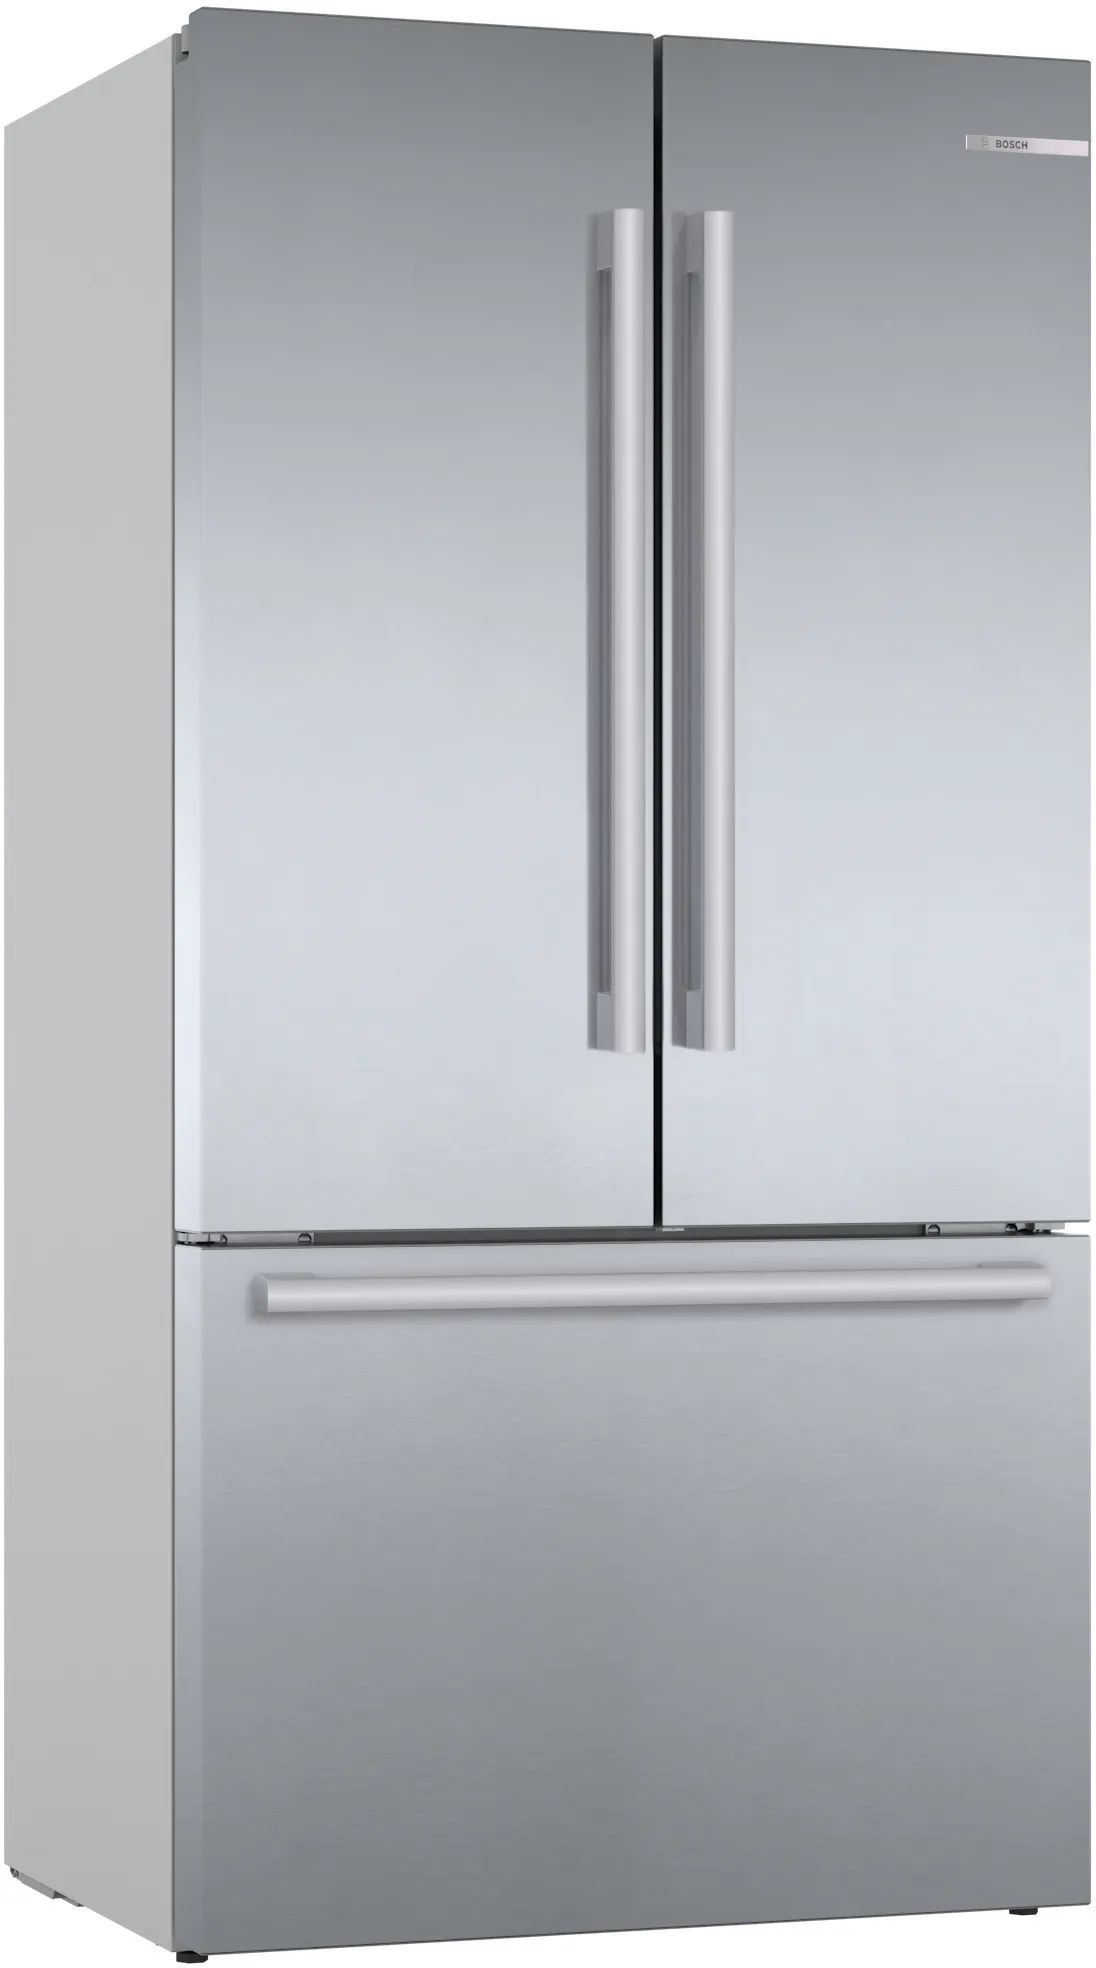 Series 8 French Door Bottom freezer, multi door 183 x 90.5 cm Stainless steel (with anti-fingerprint) 